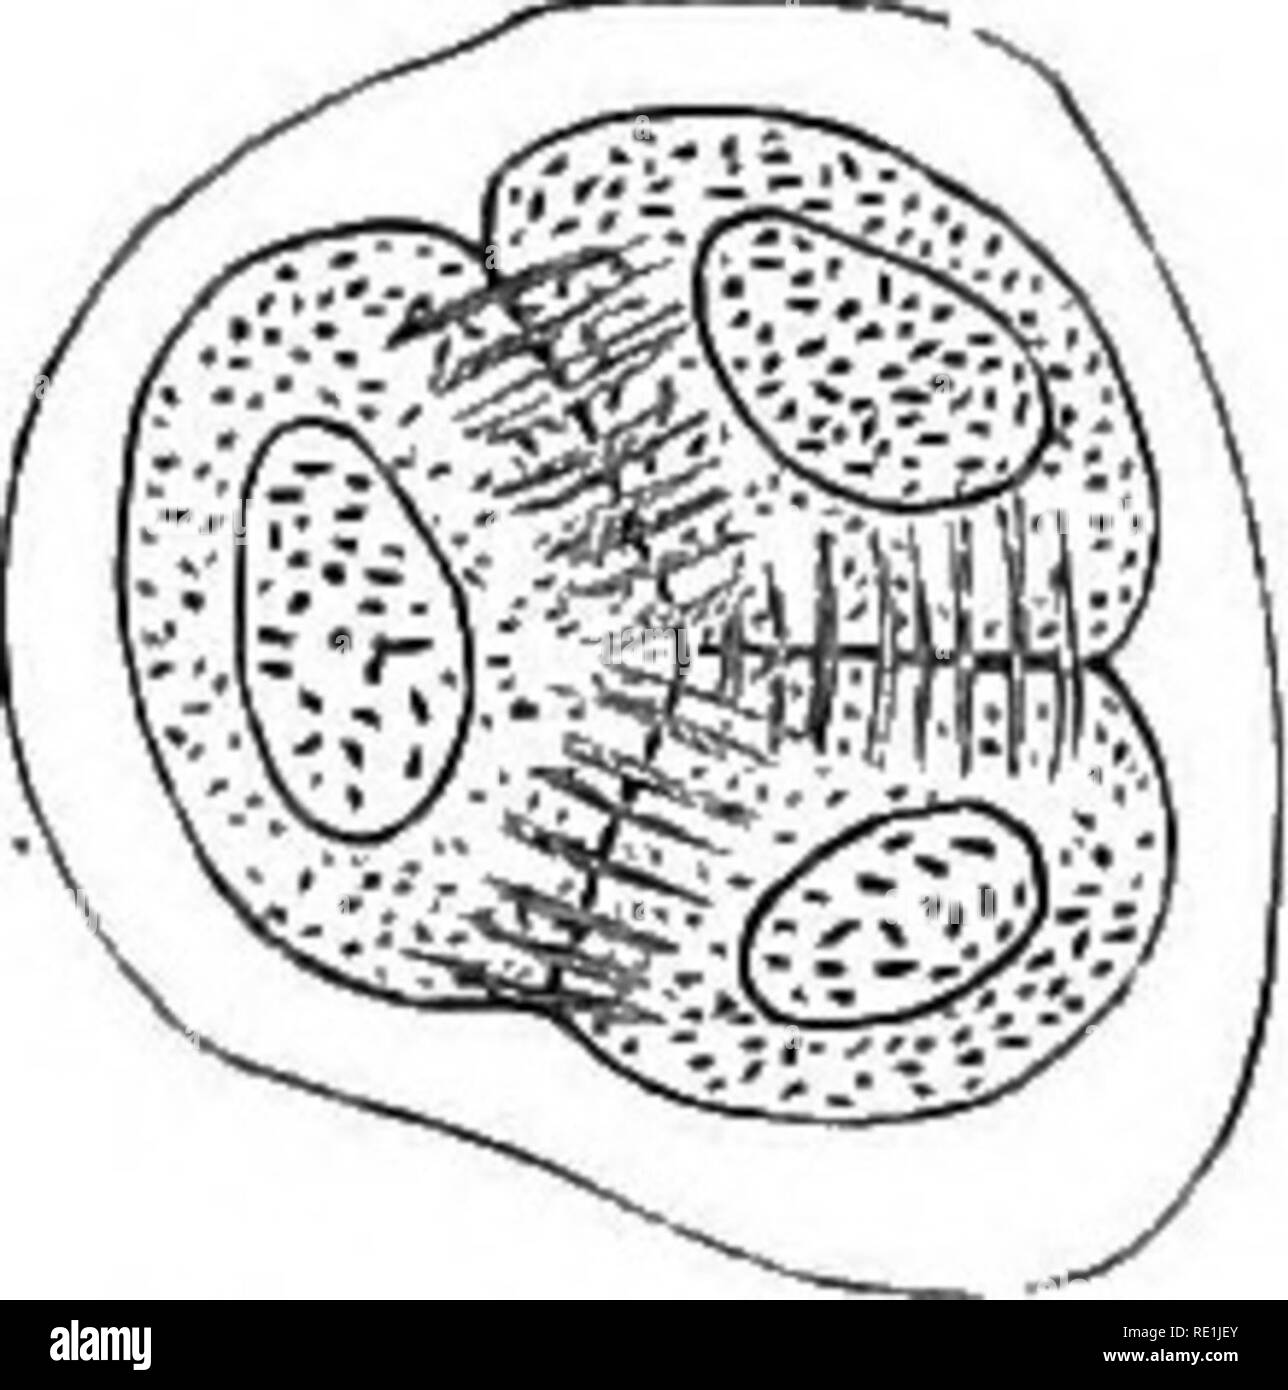 . Ein Handbuch der Botanik. Botanik. Ficf. 664. Hellehorus ftelidux. A-n ach dem strasburger. (X540) Quadripartition der Mutter - Zelle von Pollen: in B das Anschlussgewinde und Cell-Platten angezeigt, in der die Wände gebildet worden. Nur drei sind sichtbar, der vierte nicht "im Fokus; die Entwicklung ist Tetraedrischen. als buddinff, oder gp. Mination (fiy. 662) unter der unteren Thallophytes. In einigen wenigen Fällen in einigen der niederen Pflanzen die Teilung der Zelle ist nicht vorangegangen durch Division des Kerns. In anderen, nach dem Kern ist geteilt, die neue Zelle-Wand wird von einem Einwachsen von den Wänden gebildet Stockfoto